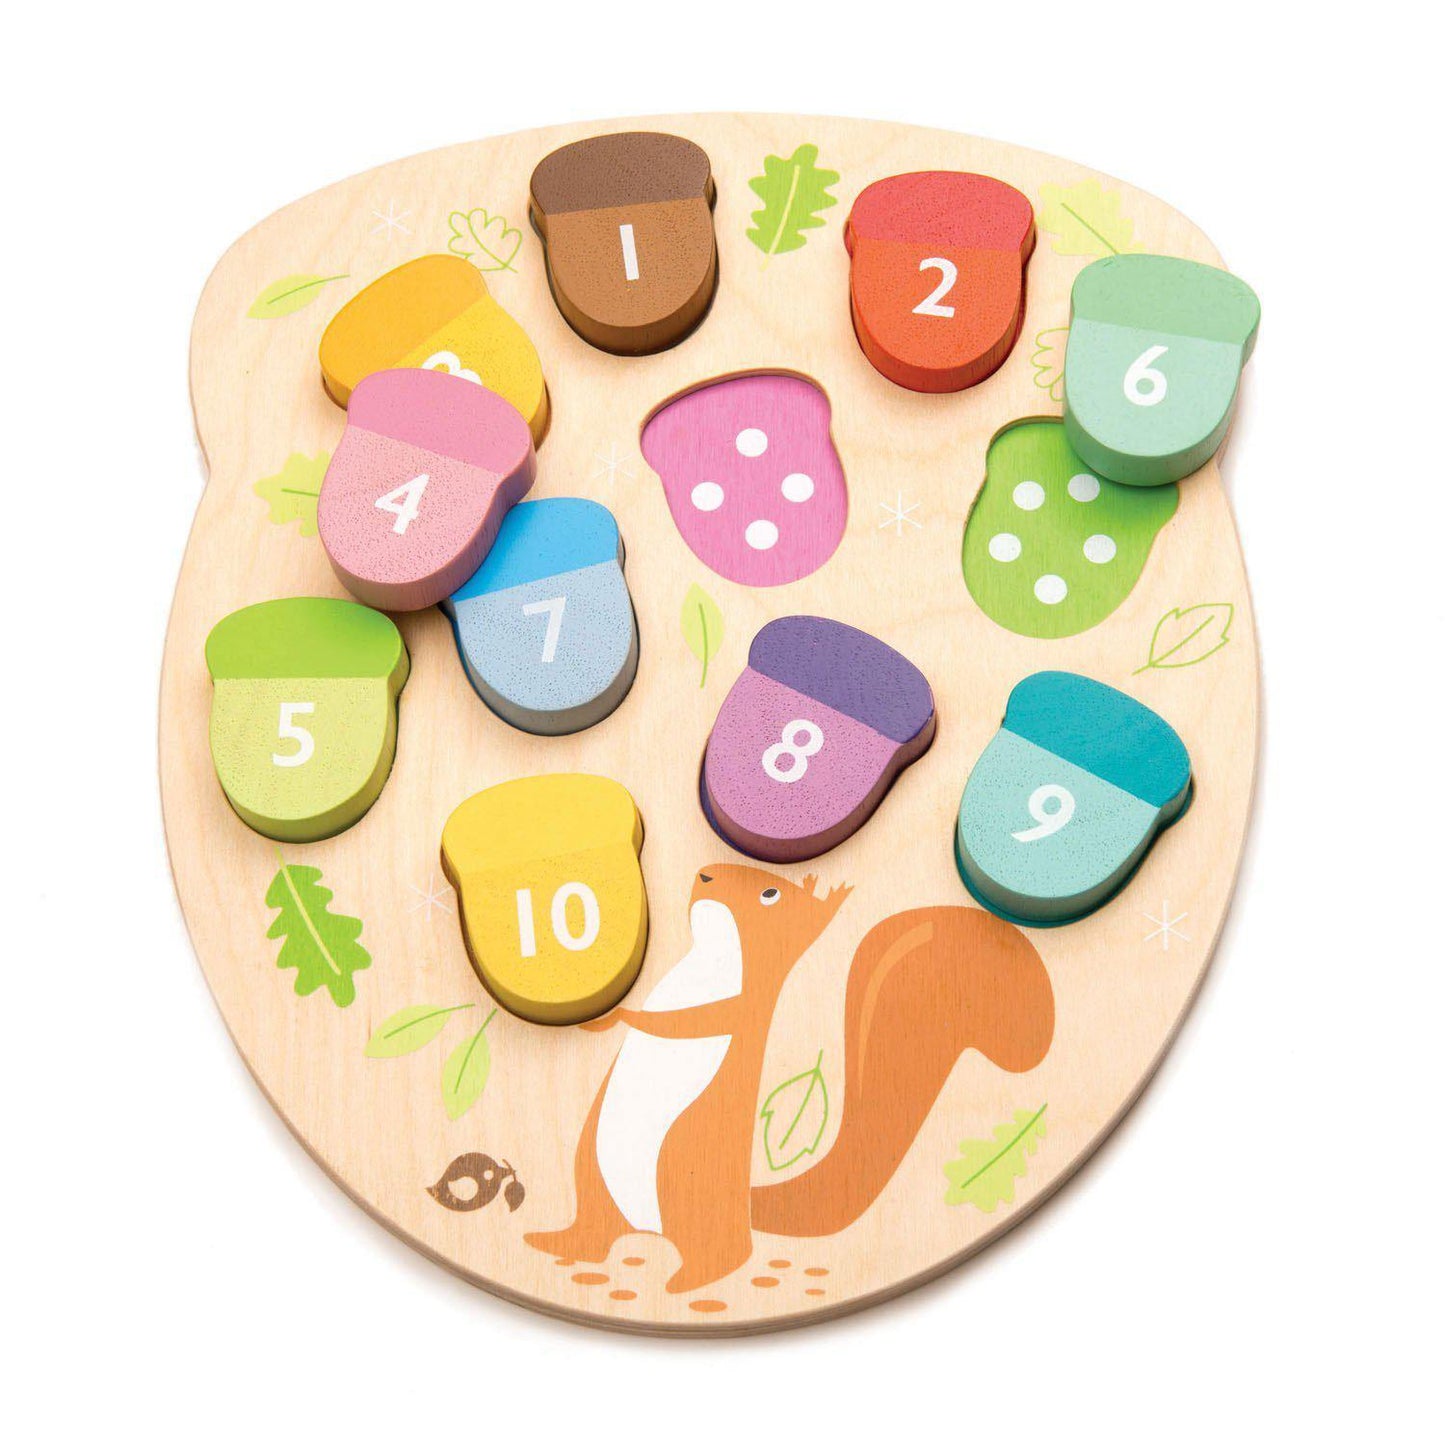 Oktató makkszámoló puzzle, prémium minőségű fából - How Many Acorns? - Tender Leaf Toys-Tender Leaf Toys-1-Játszma.ro - A maradandó élmények boltja